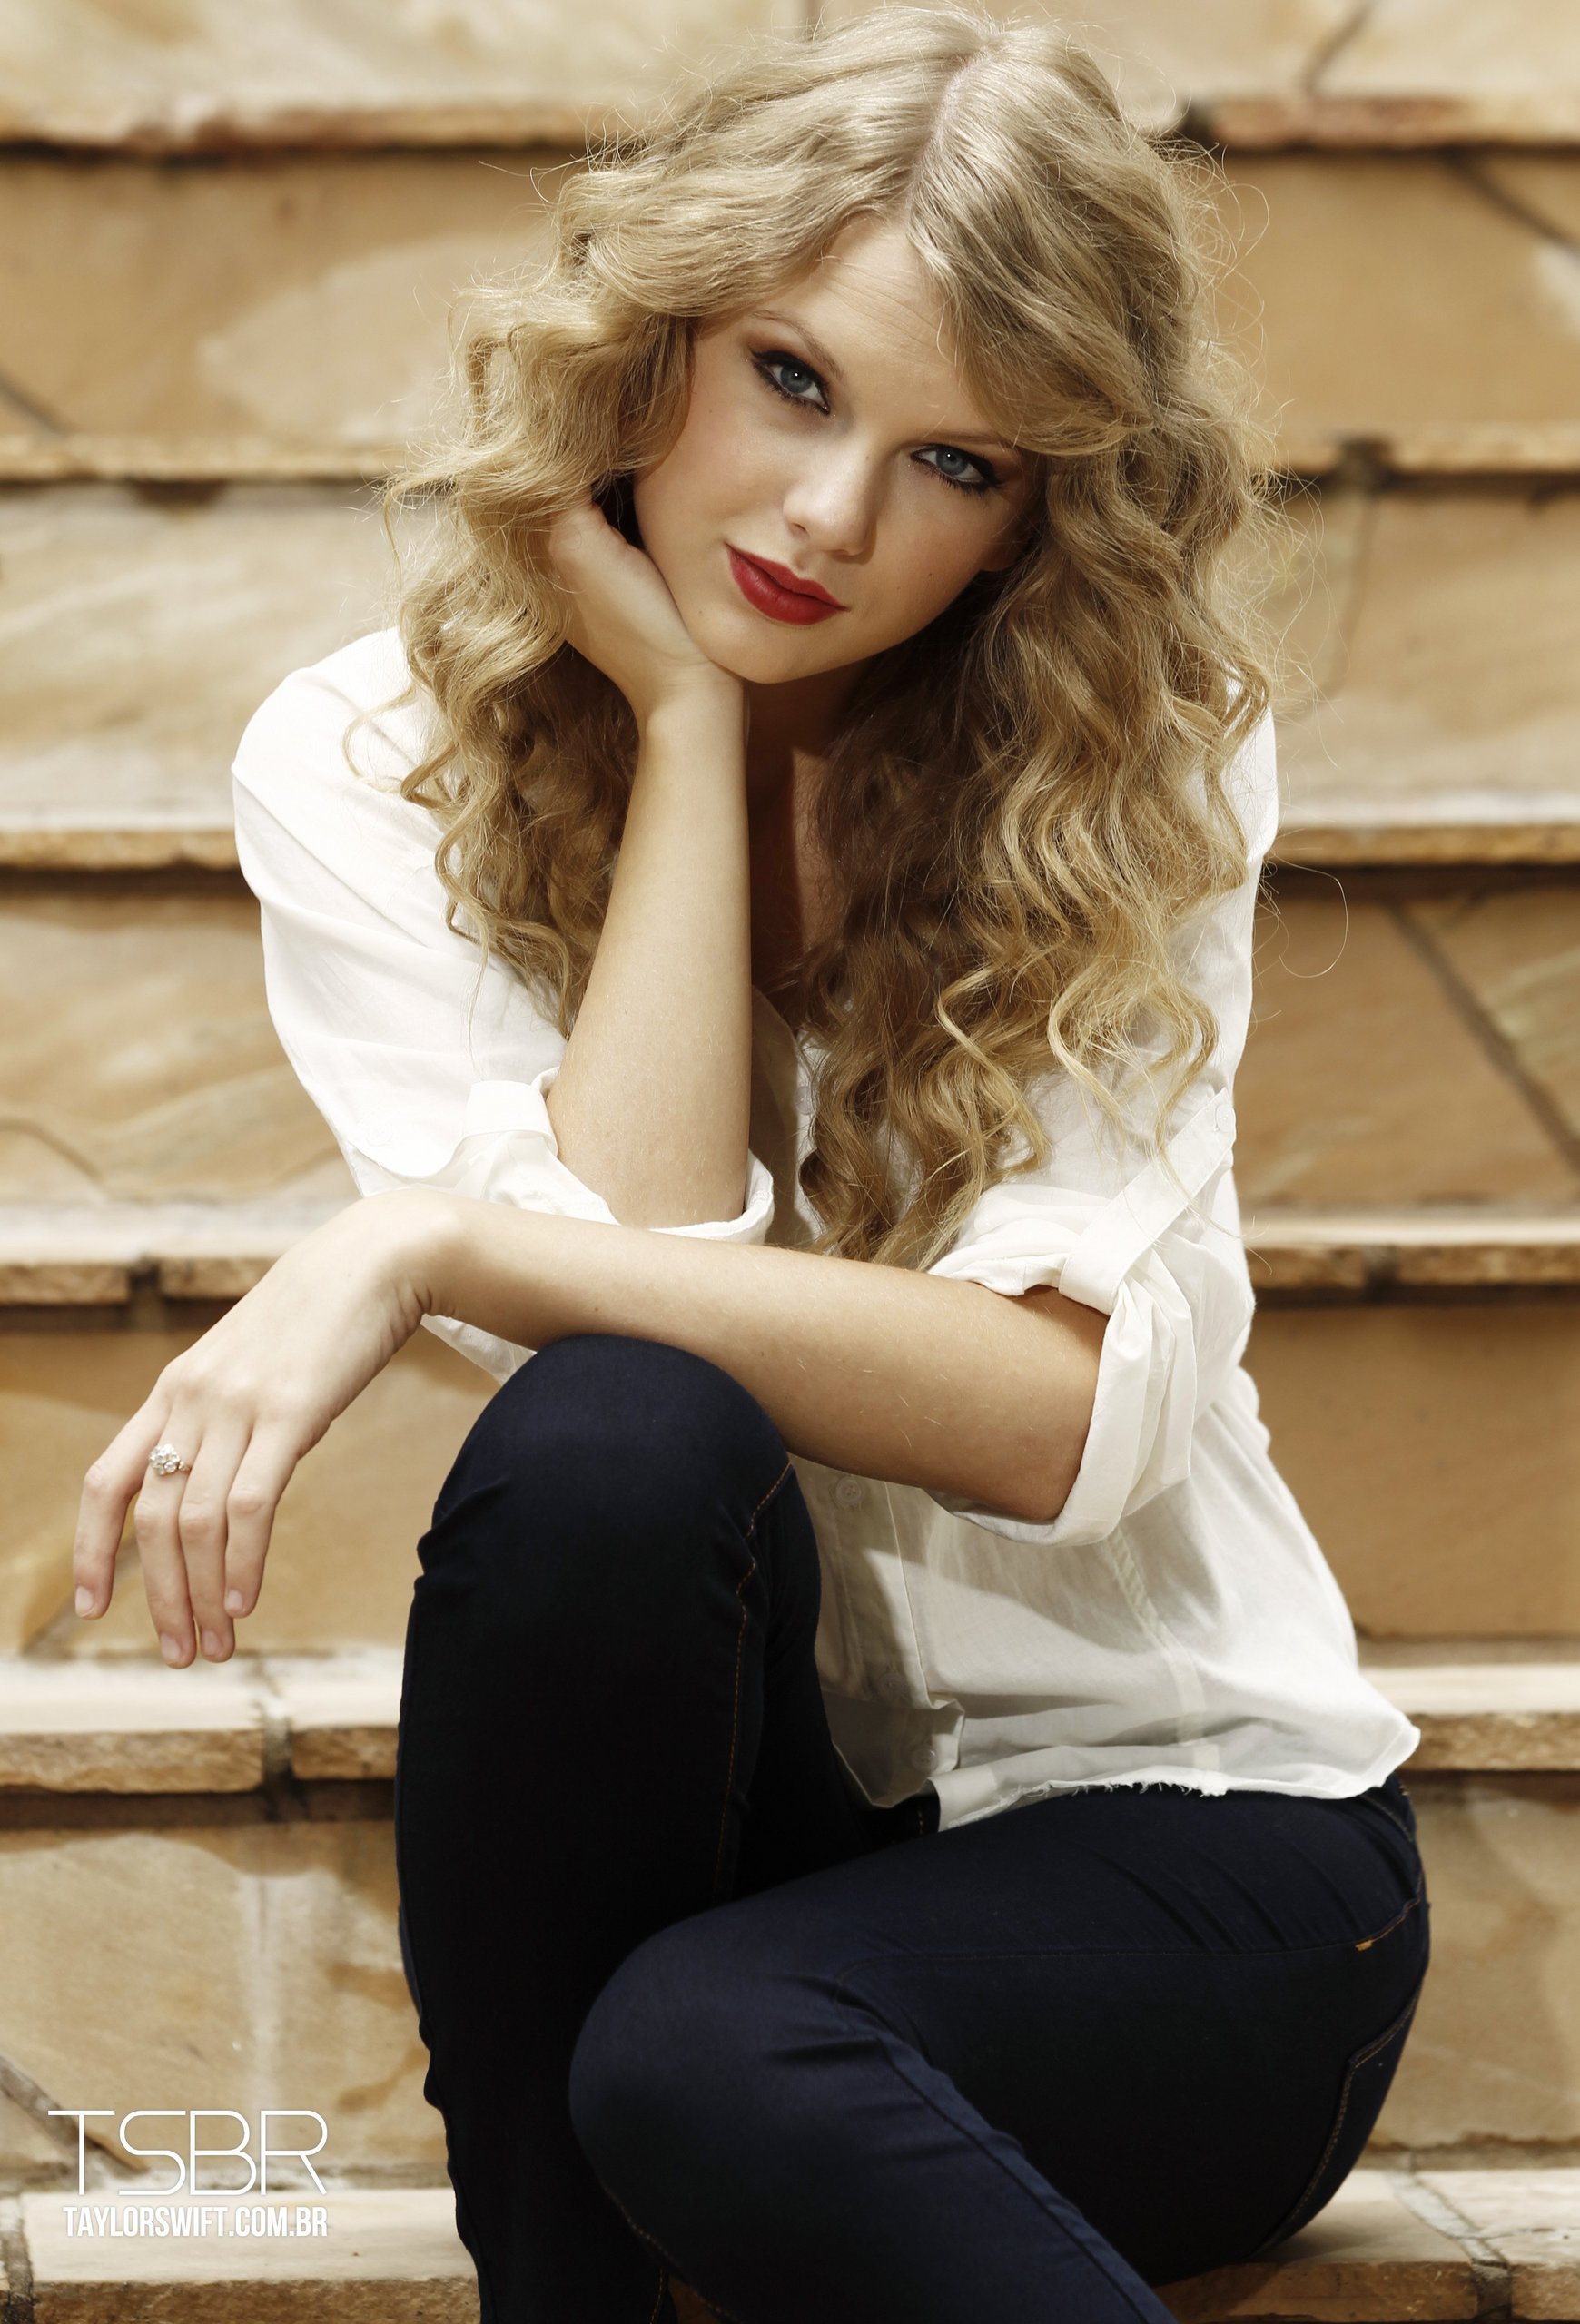 Taylor Swift - Taylor Swift Photo (16433078) - Fanpop